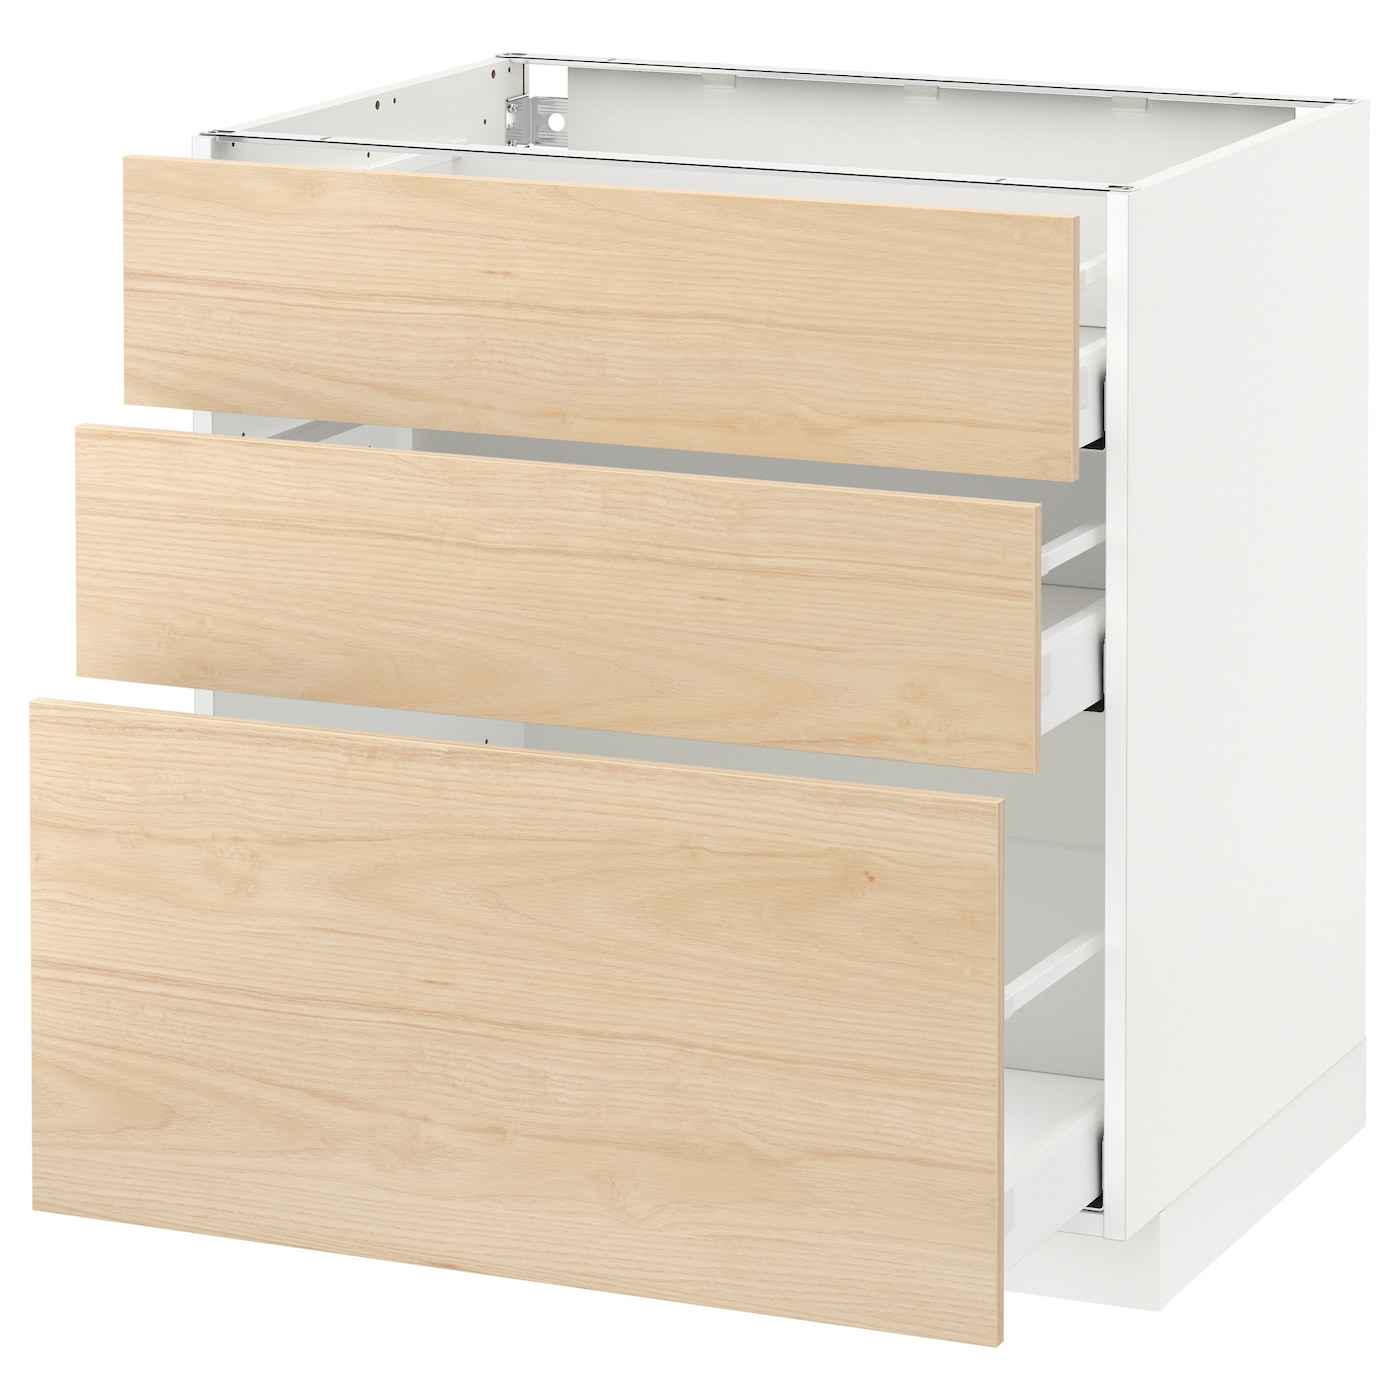 Напольный кухонный шкаф - IKEA METOD MAXIMERA, 88x62x80см, белый/светлый ясень, МЕТОД МАКСИМЕРА ИКЕА